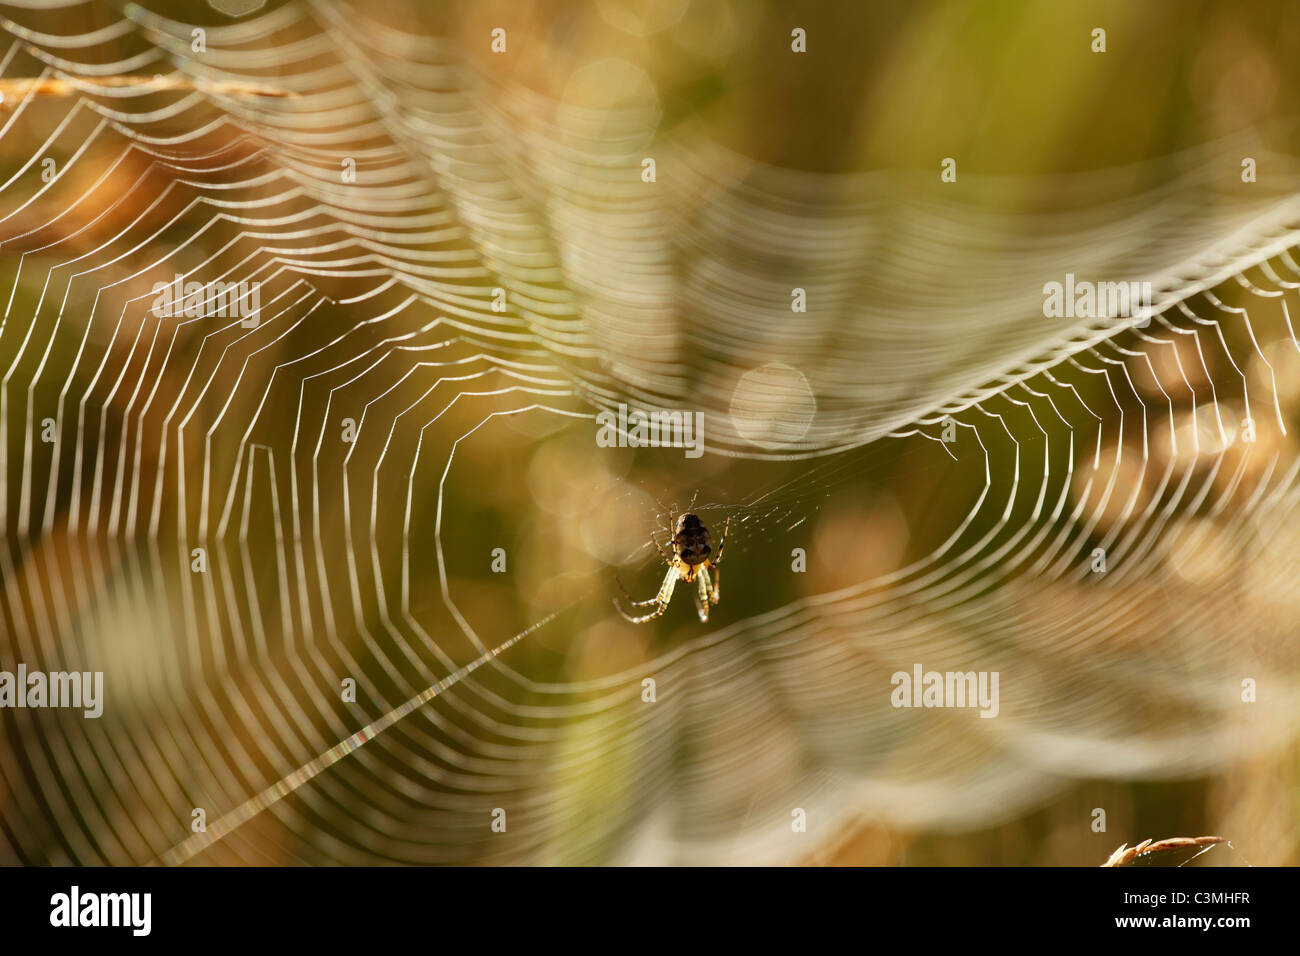 Germany, Bavaria, Spider sur spider web, Close up Banque D'Images